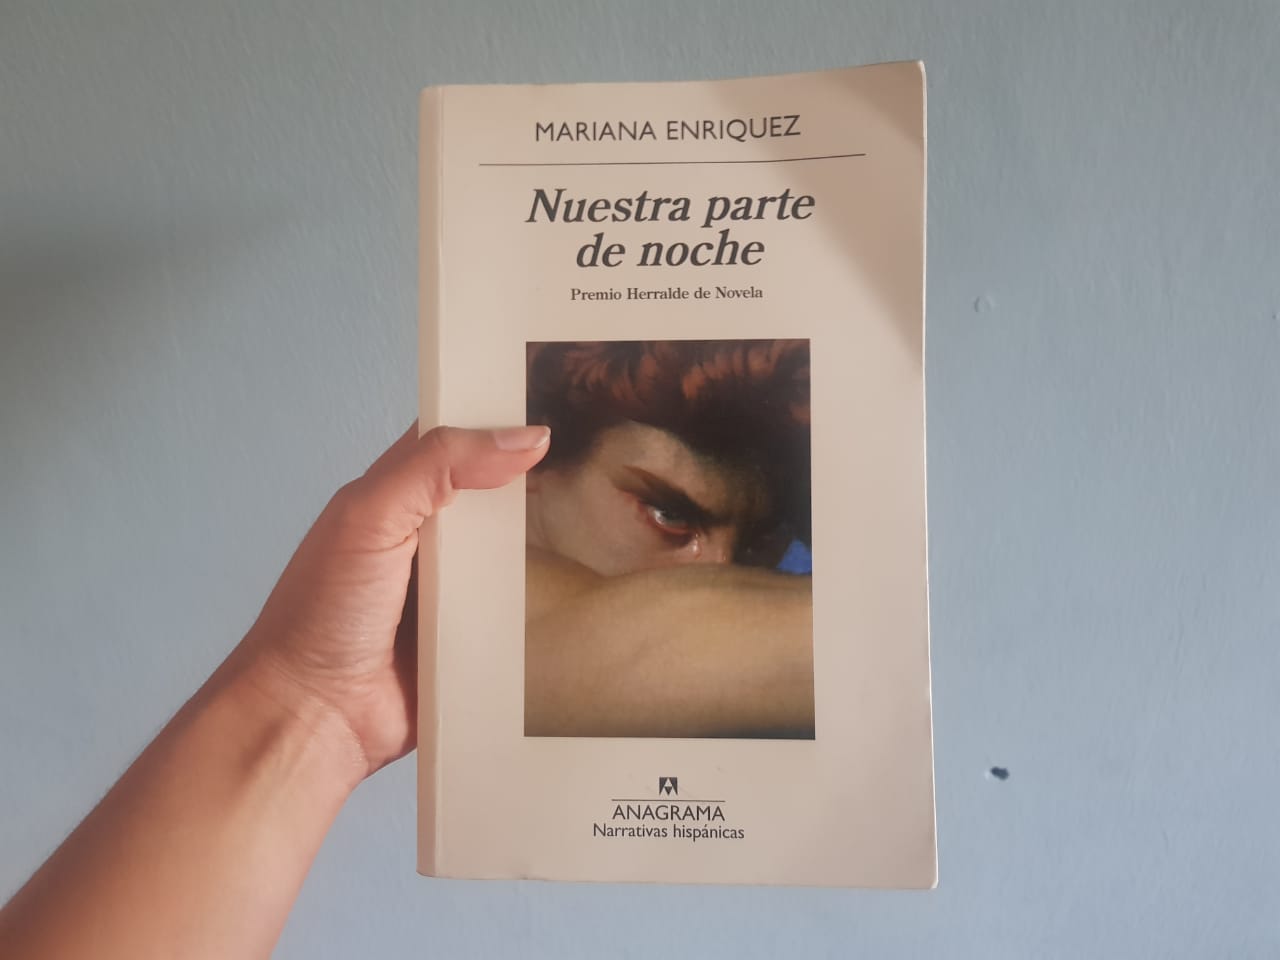 Lecturas: Nuestra parte de noche de Mariana Enriquez